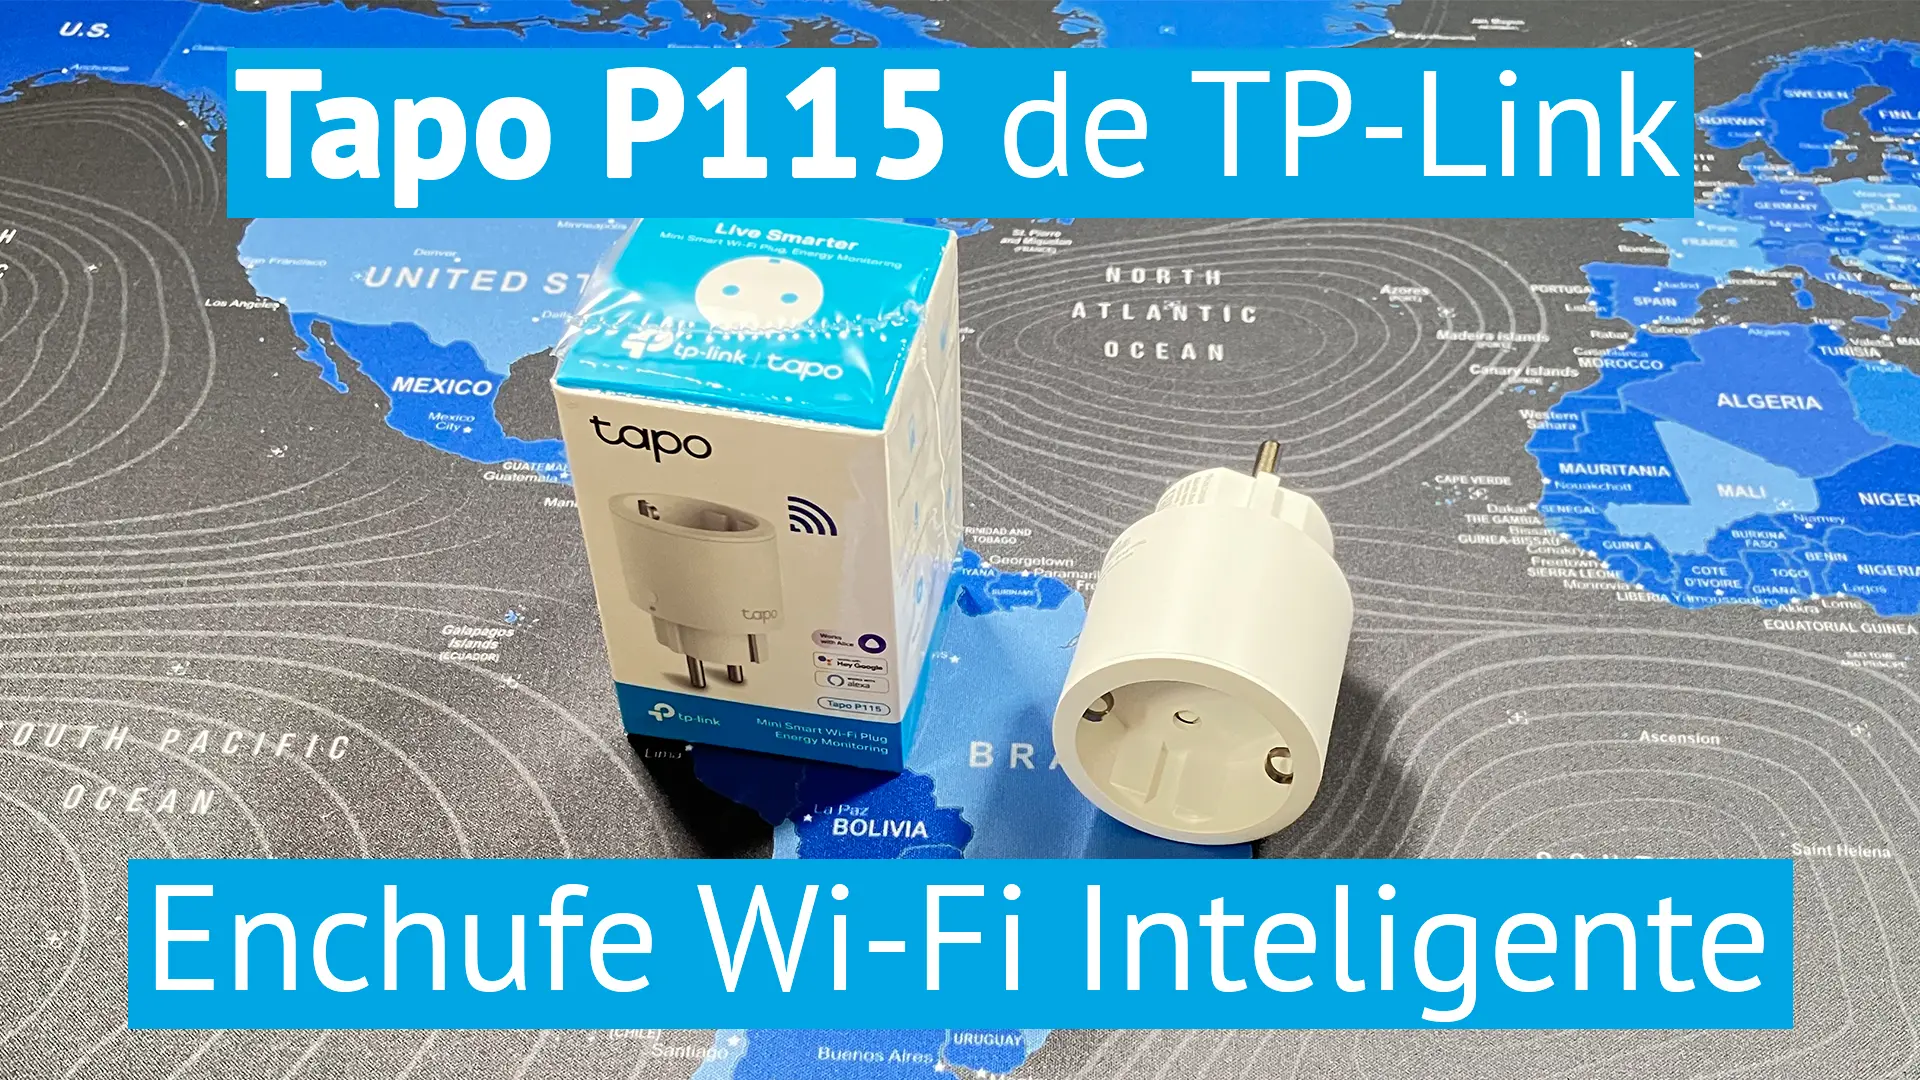 Tapo P115 el nuevo enchufe wifi inteligente de TP-Link compacto